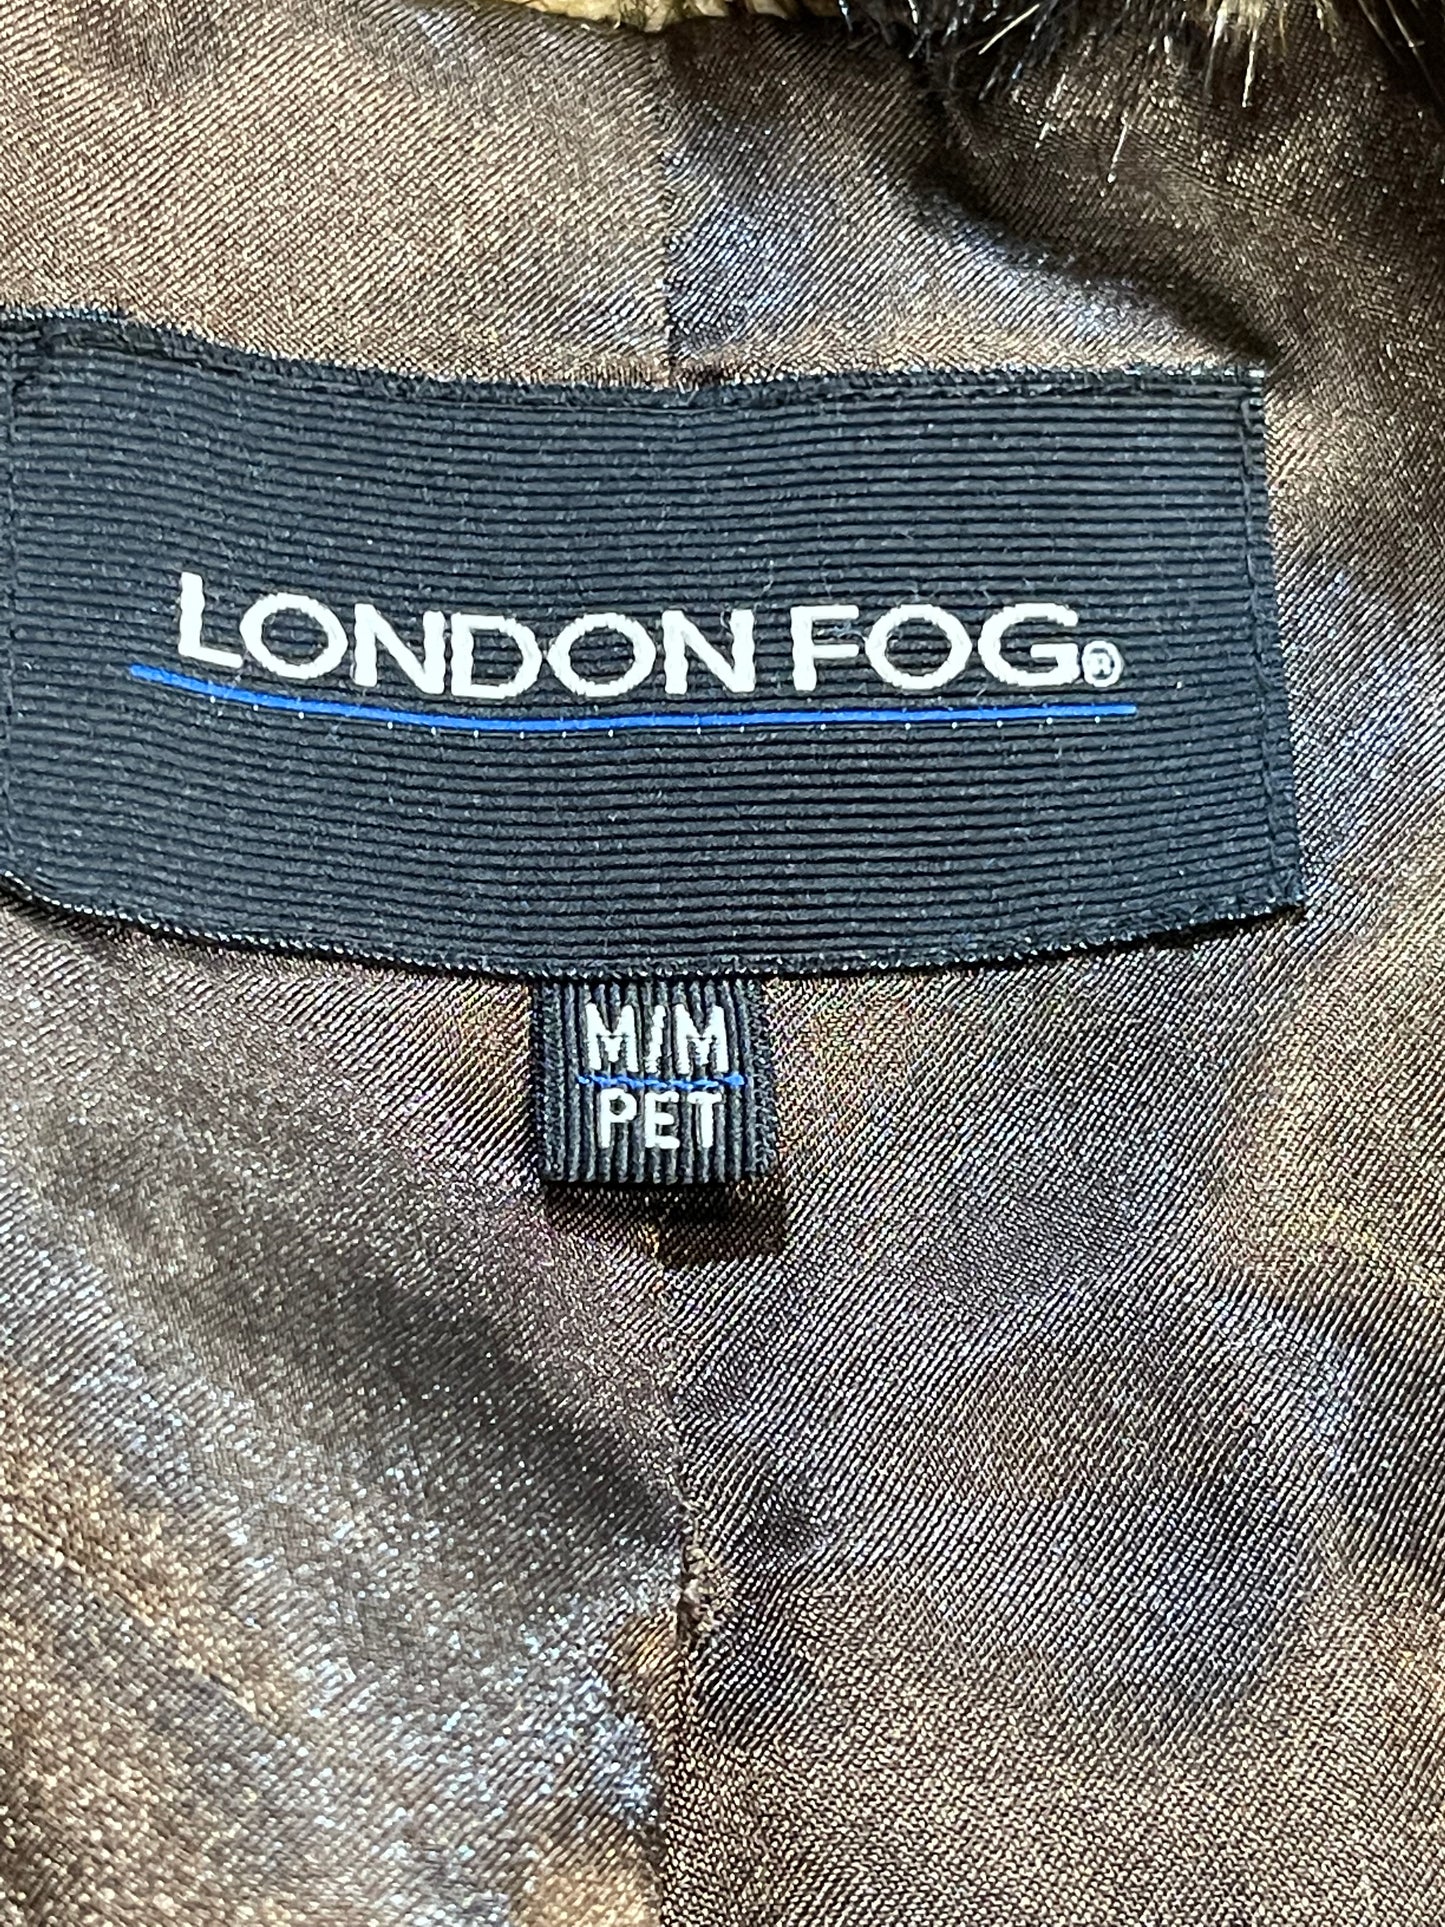 London Fog Faux Fur Coat - Medium